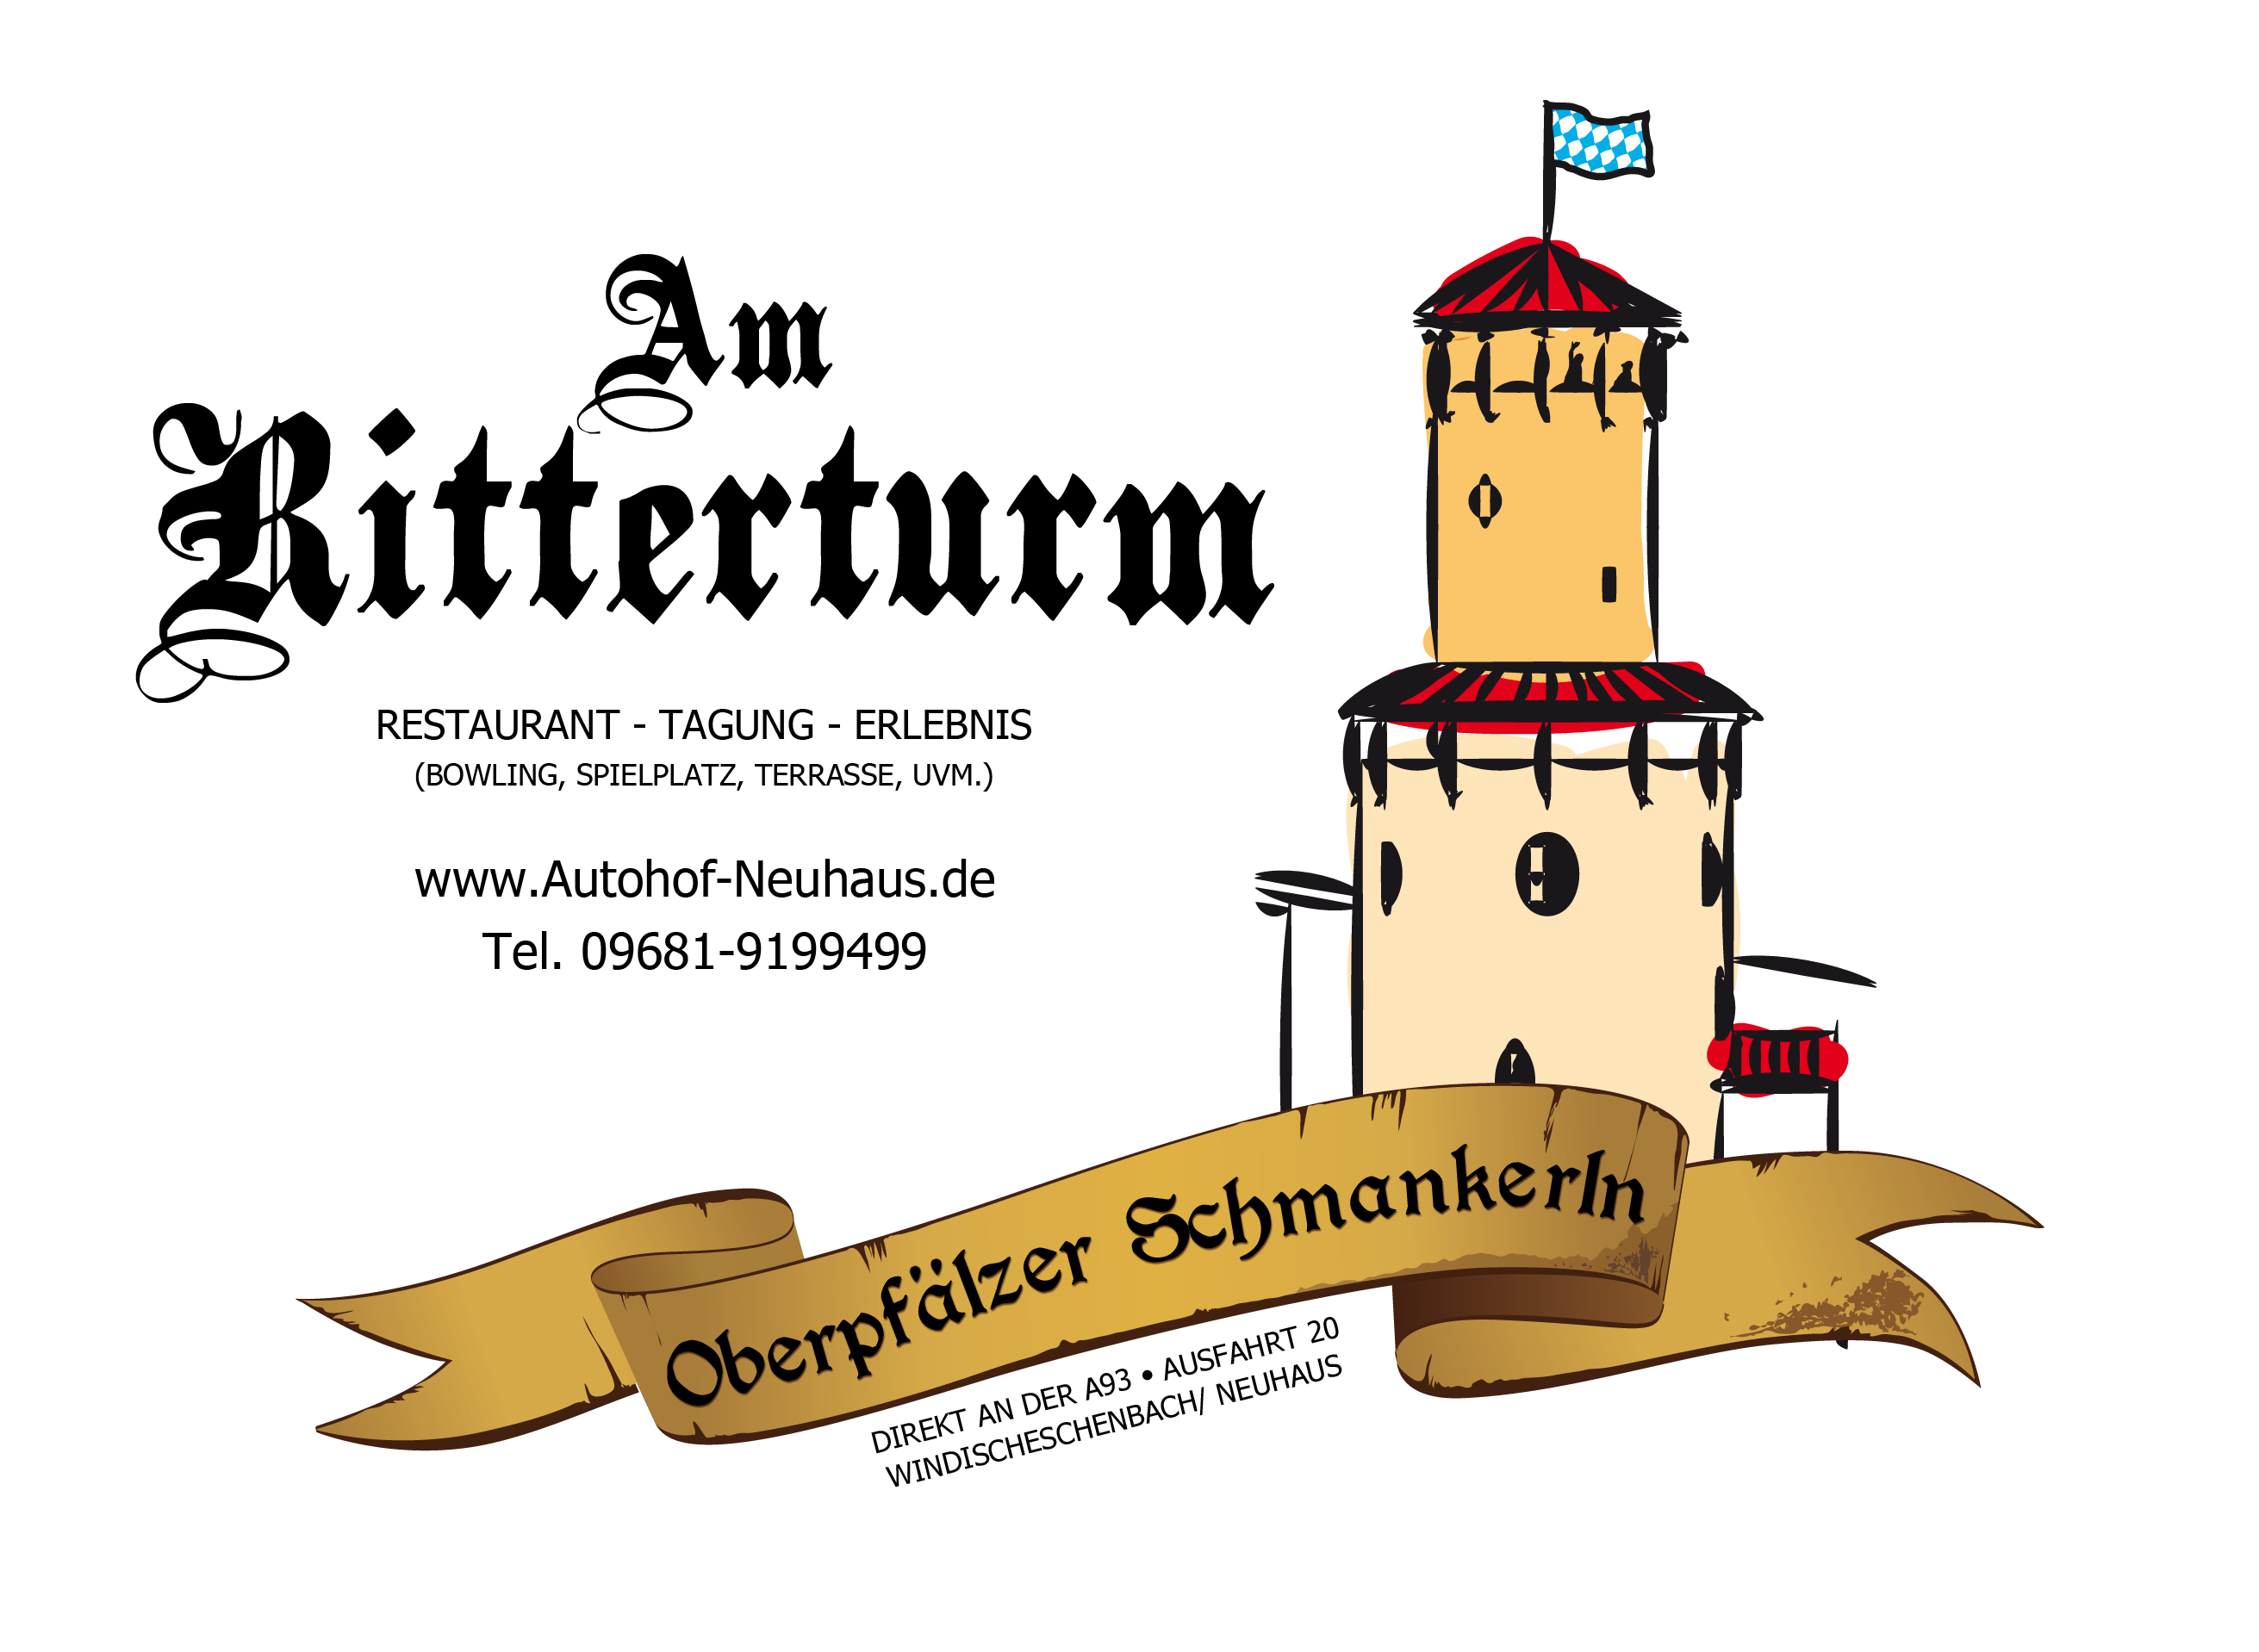 Logo für das im Autohof befindeliche Restaurant. Links der Schriftzug "Am Ritterturm". Rechts im Bild schematisch dargestellt der markante Ritterturm, Namensgeber des Restaurants.